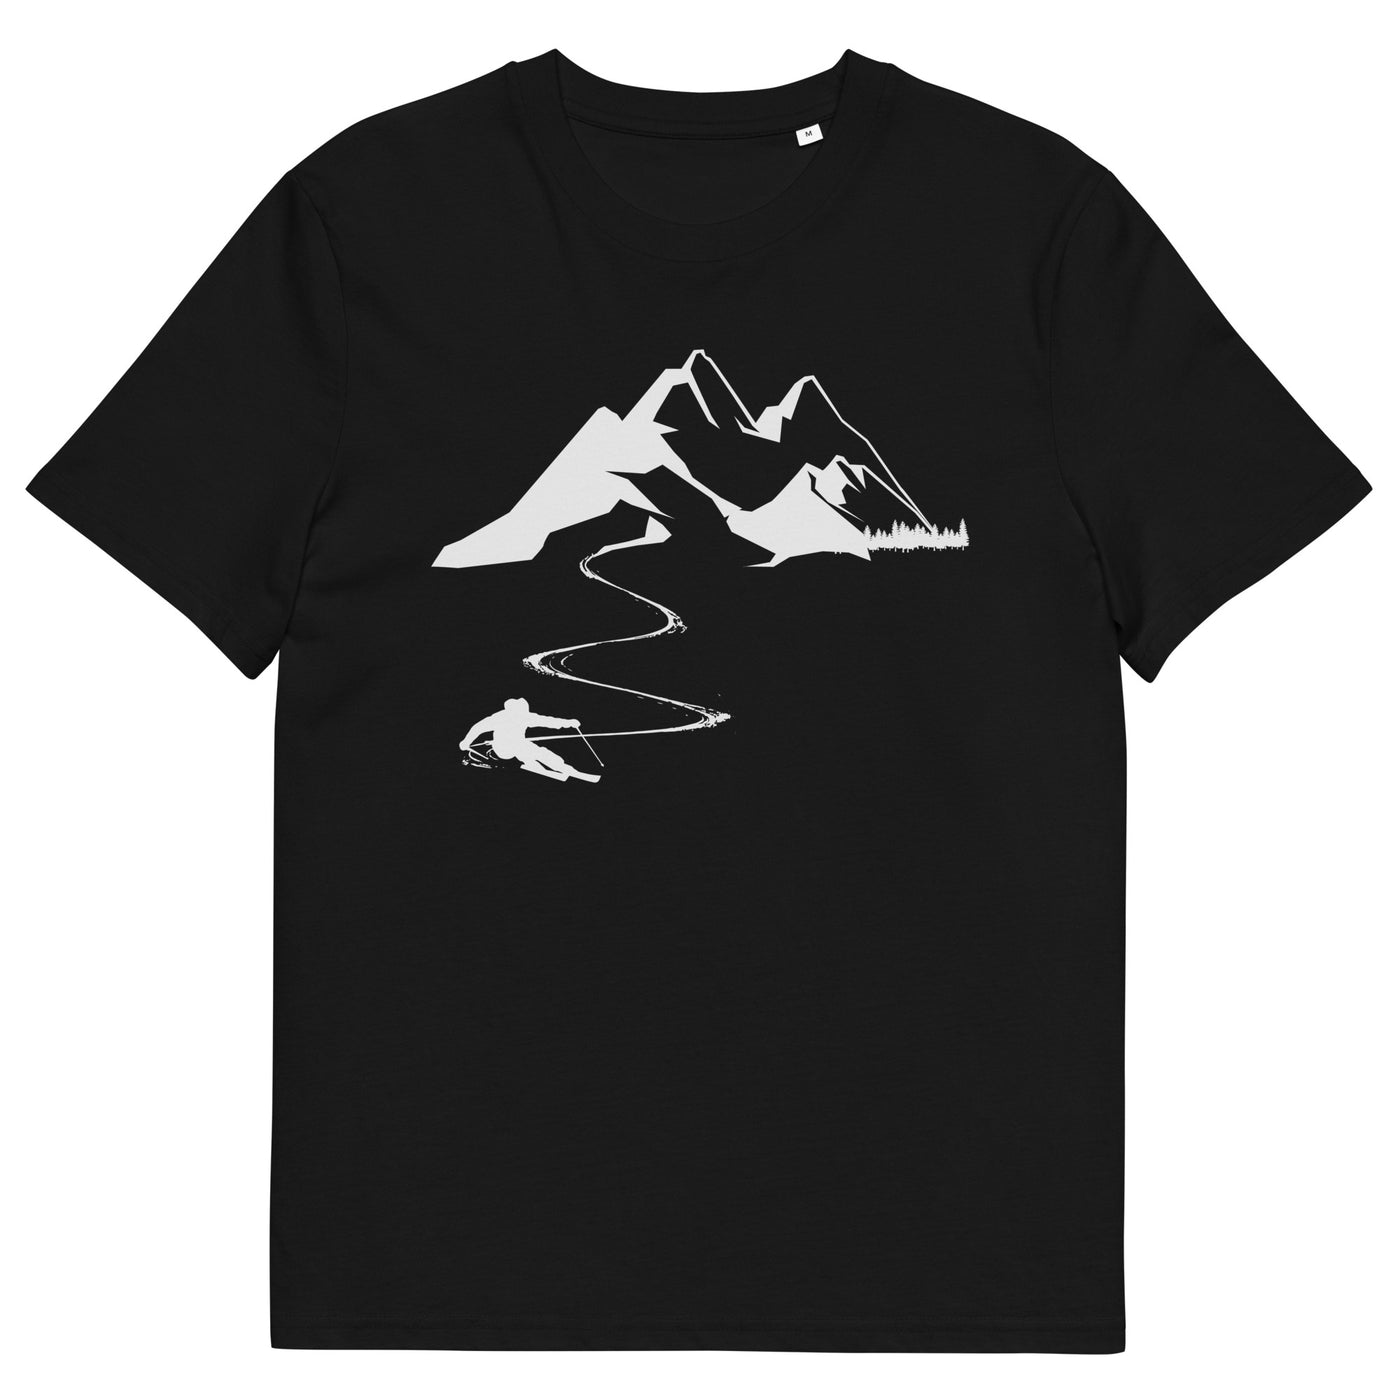 Skisüchtig - Herren Premium Organic T-Shirt klettern ski xxx yyy zzz Black